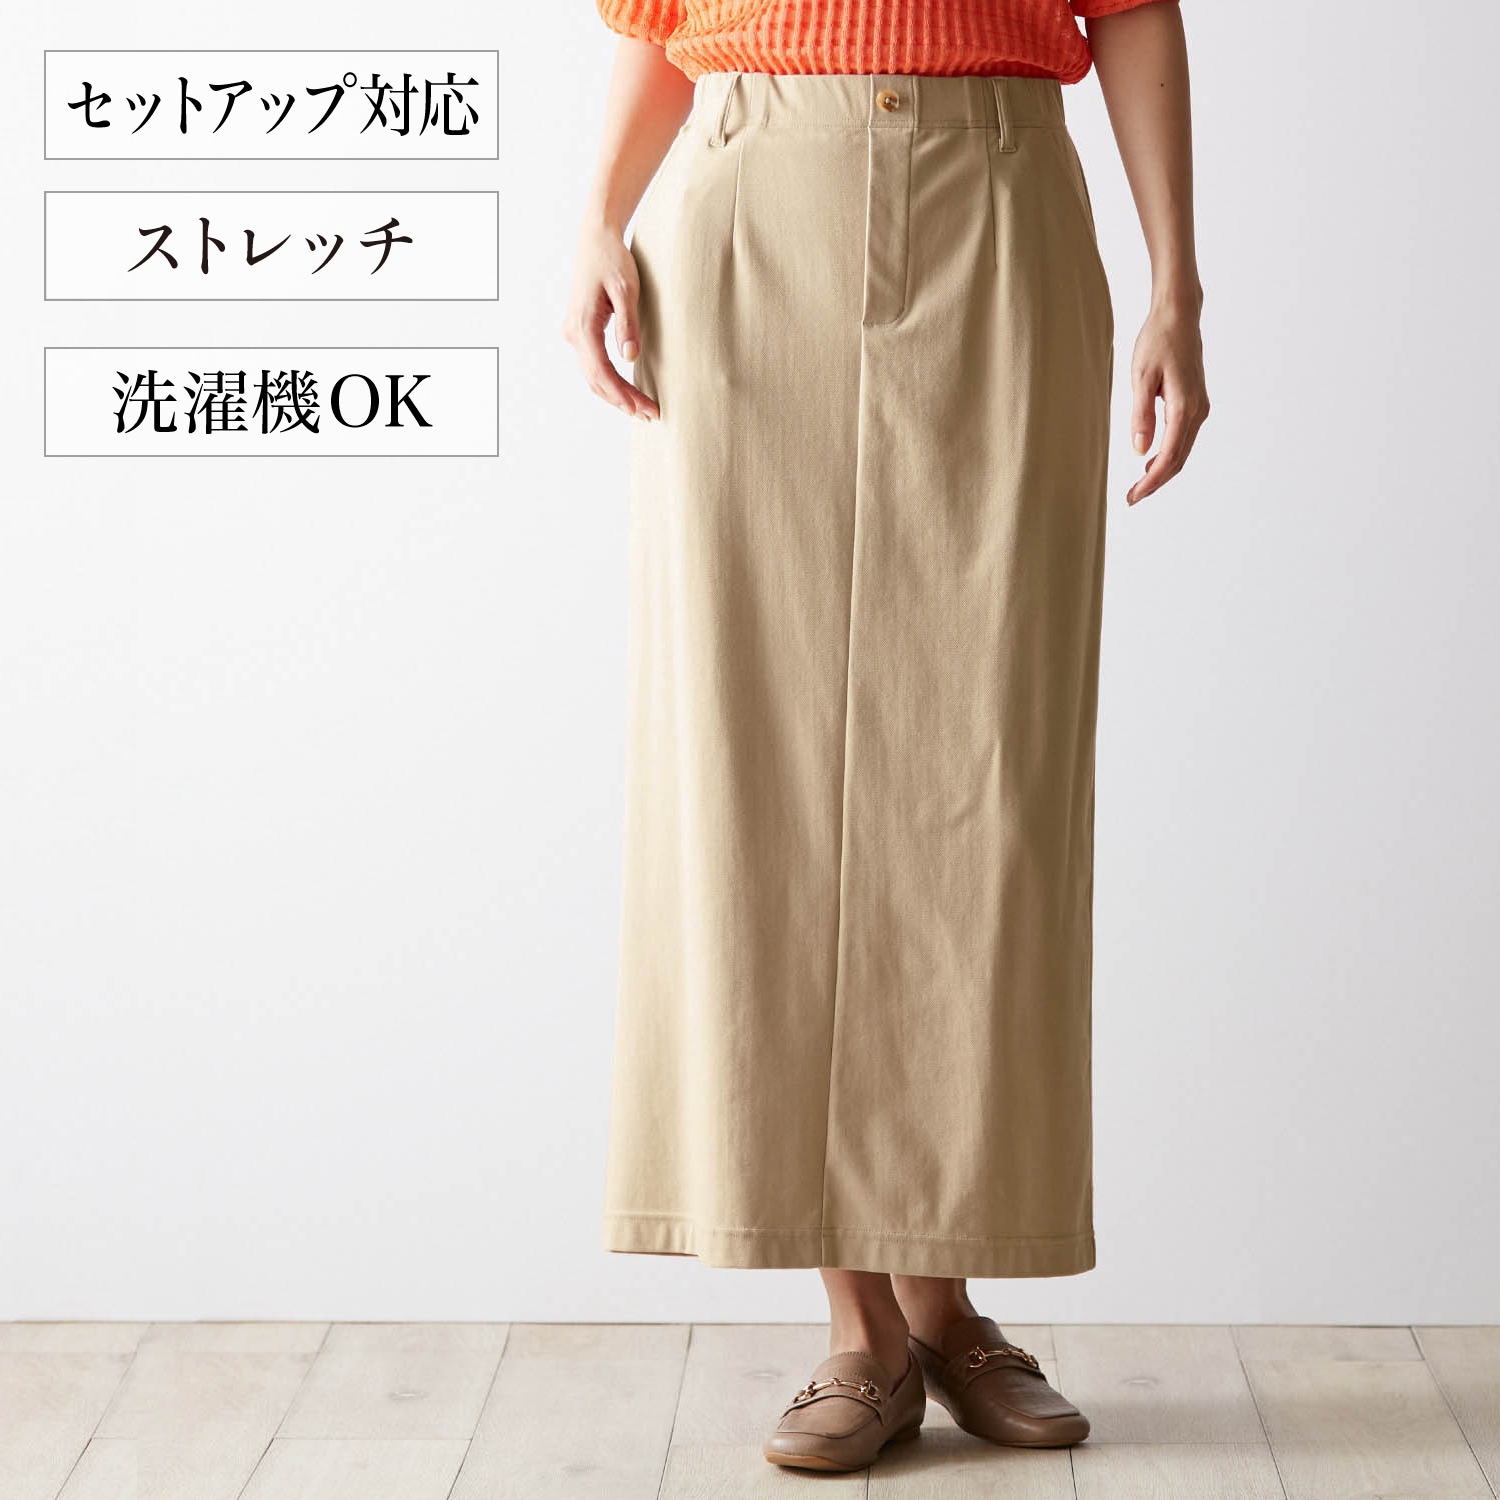 【ナチュラル & スタンダード/natural & standard】Iラインスカート【セットアップ可】